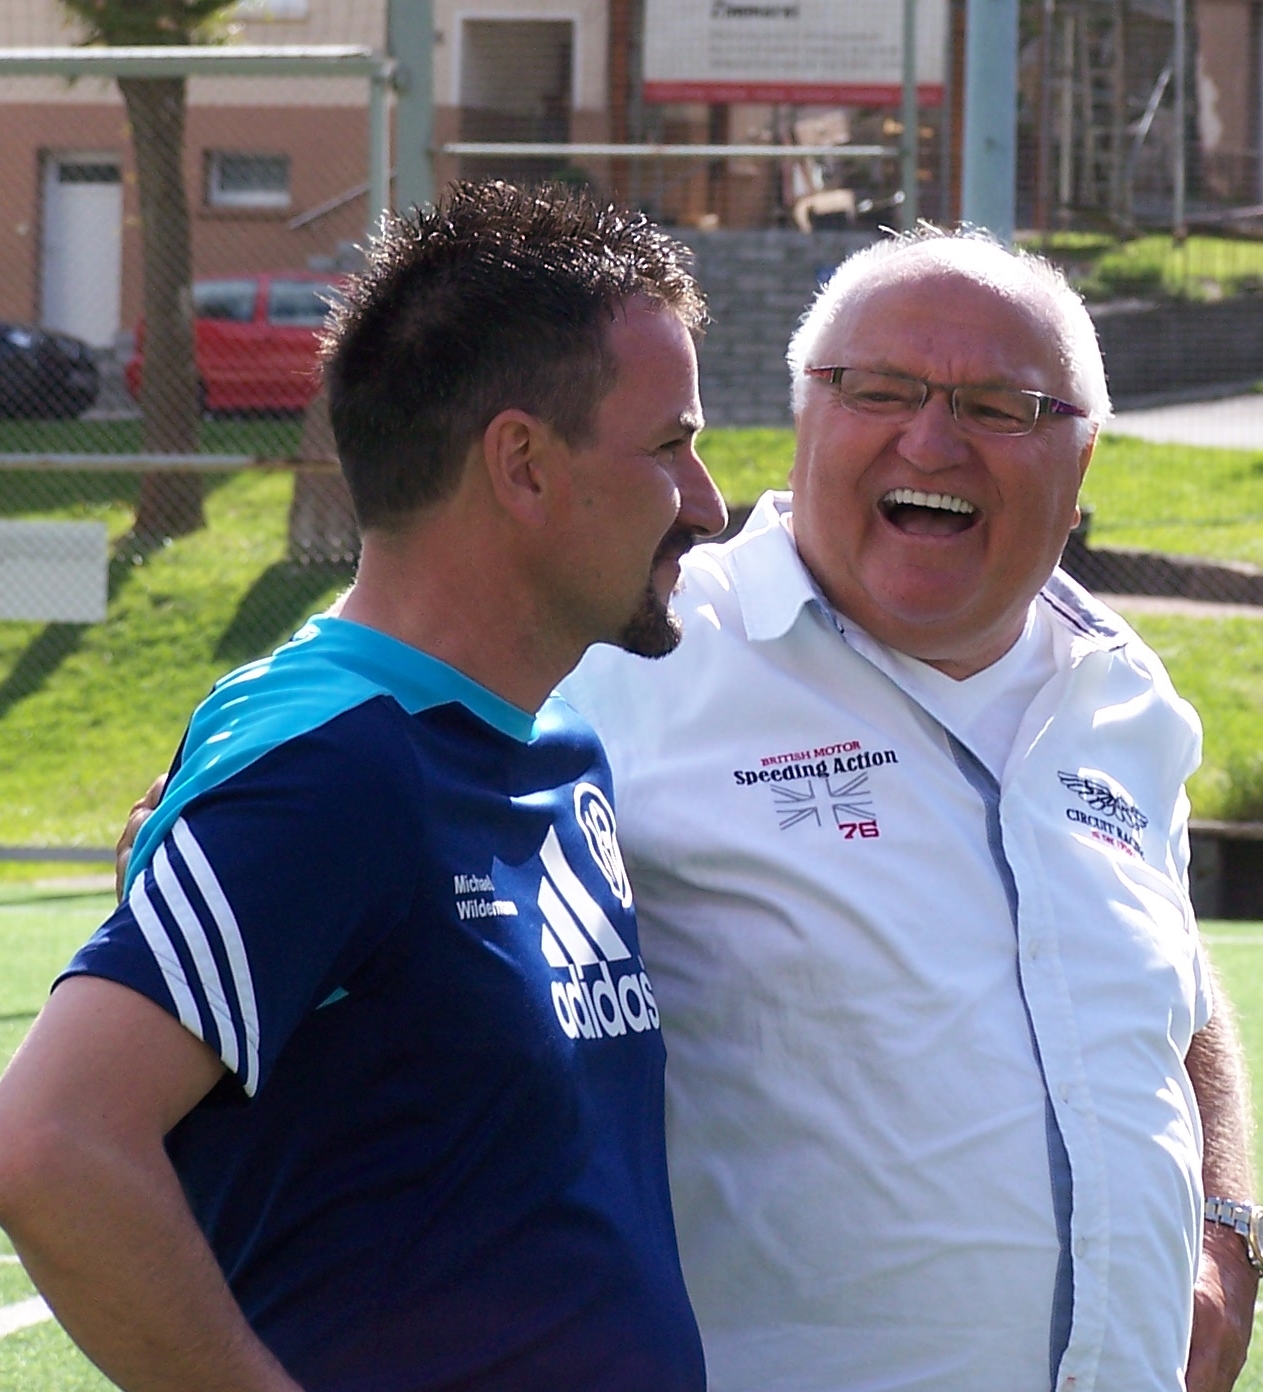 Trainer Michael Wildermann mit dem Vorstandsvorsitzenden Karl-Heinz Moosmann